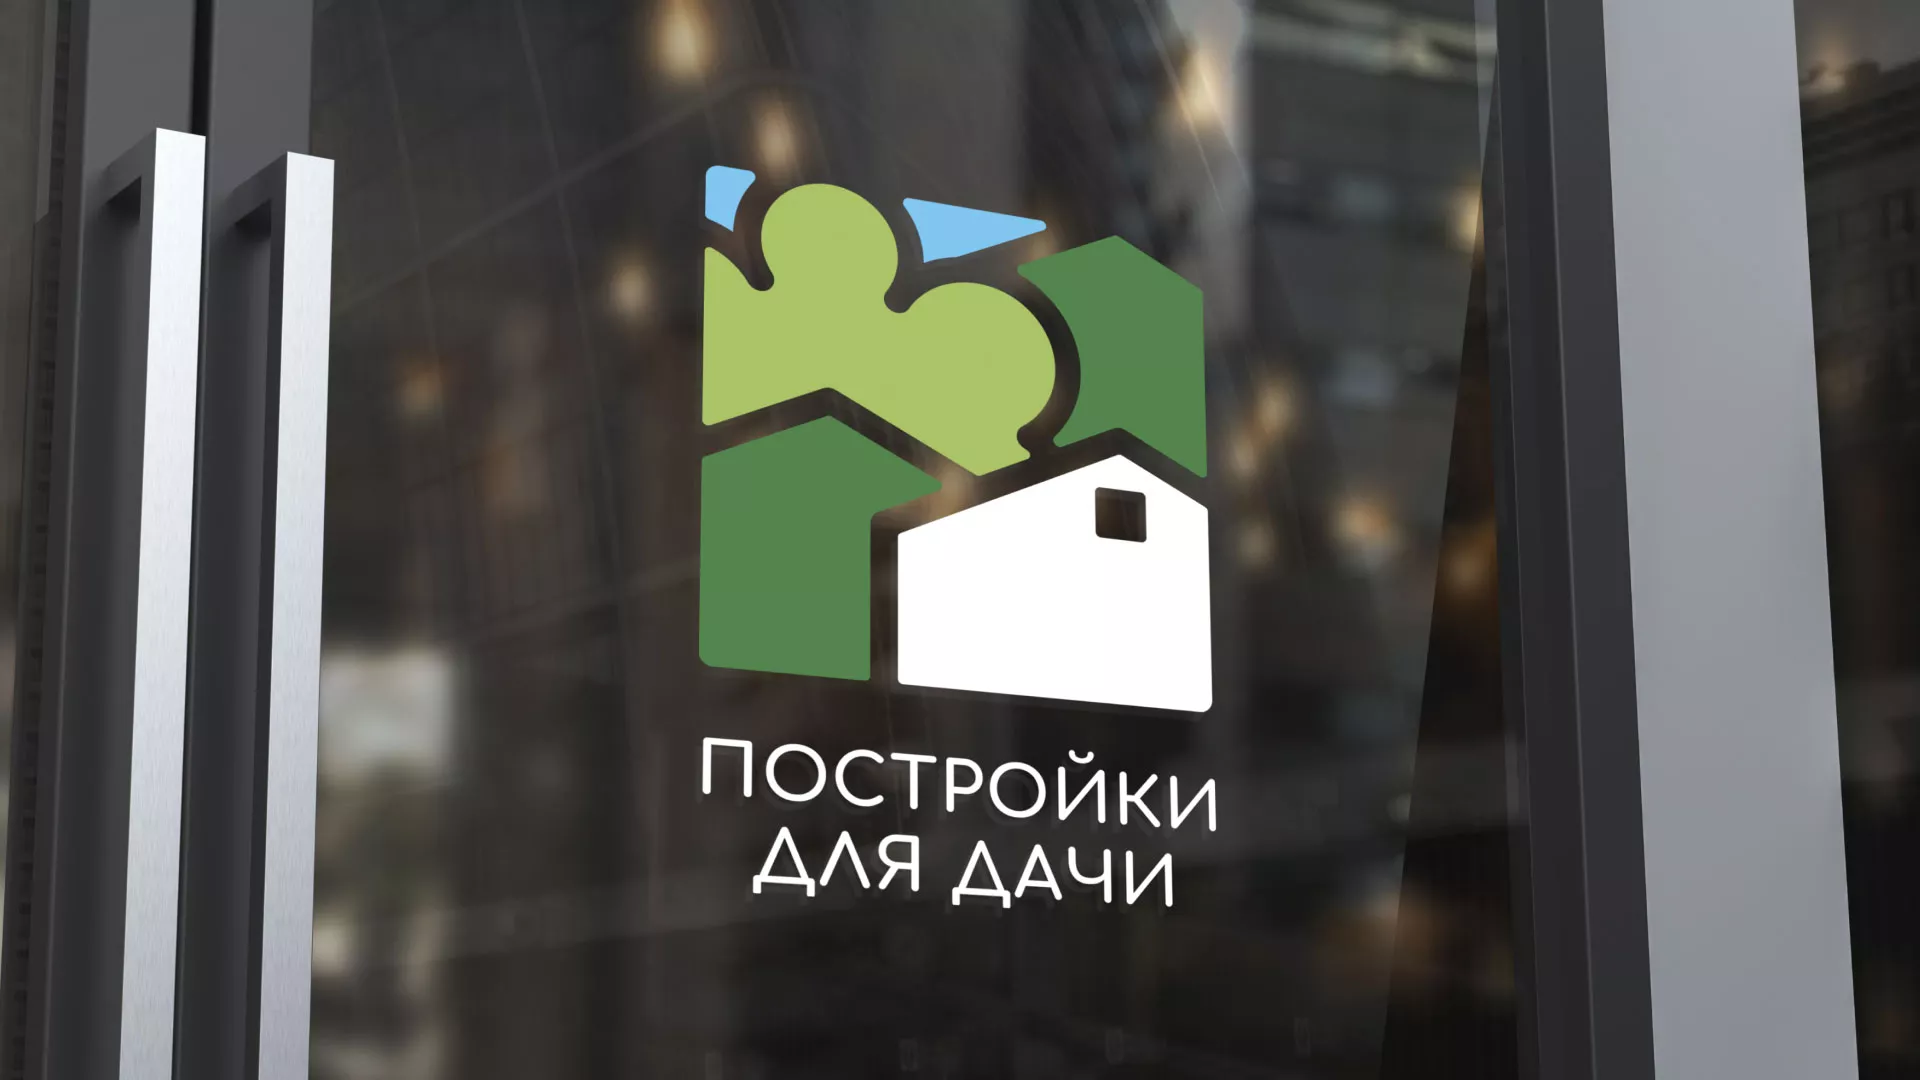 Разработка логотипа в Карабаново для компании «Постройки для дачи»